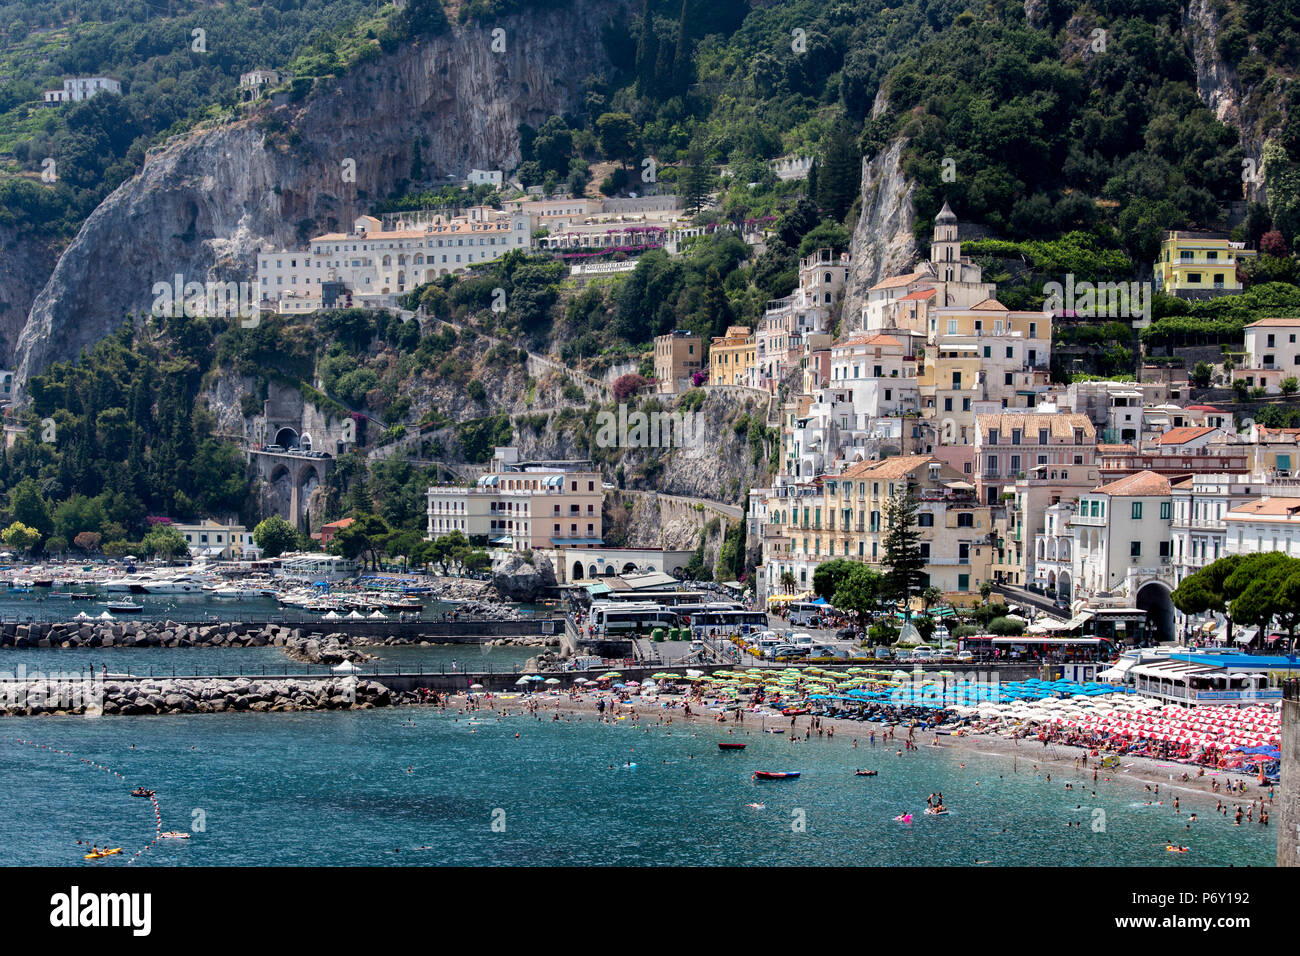 Italy, Campagnia, Amalfi Coast, Amalfi. The town of Amalfi. Stock Photo